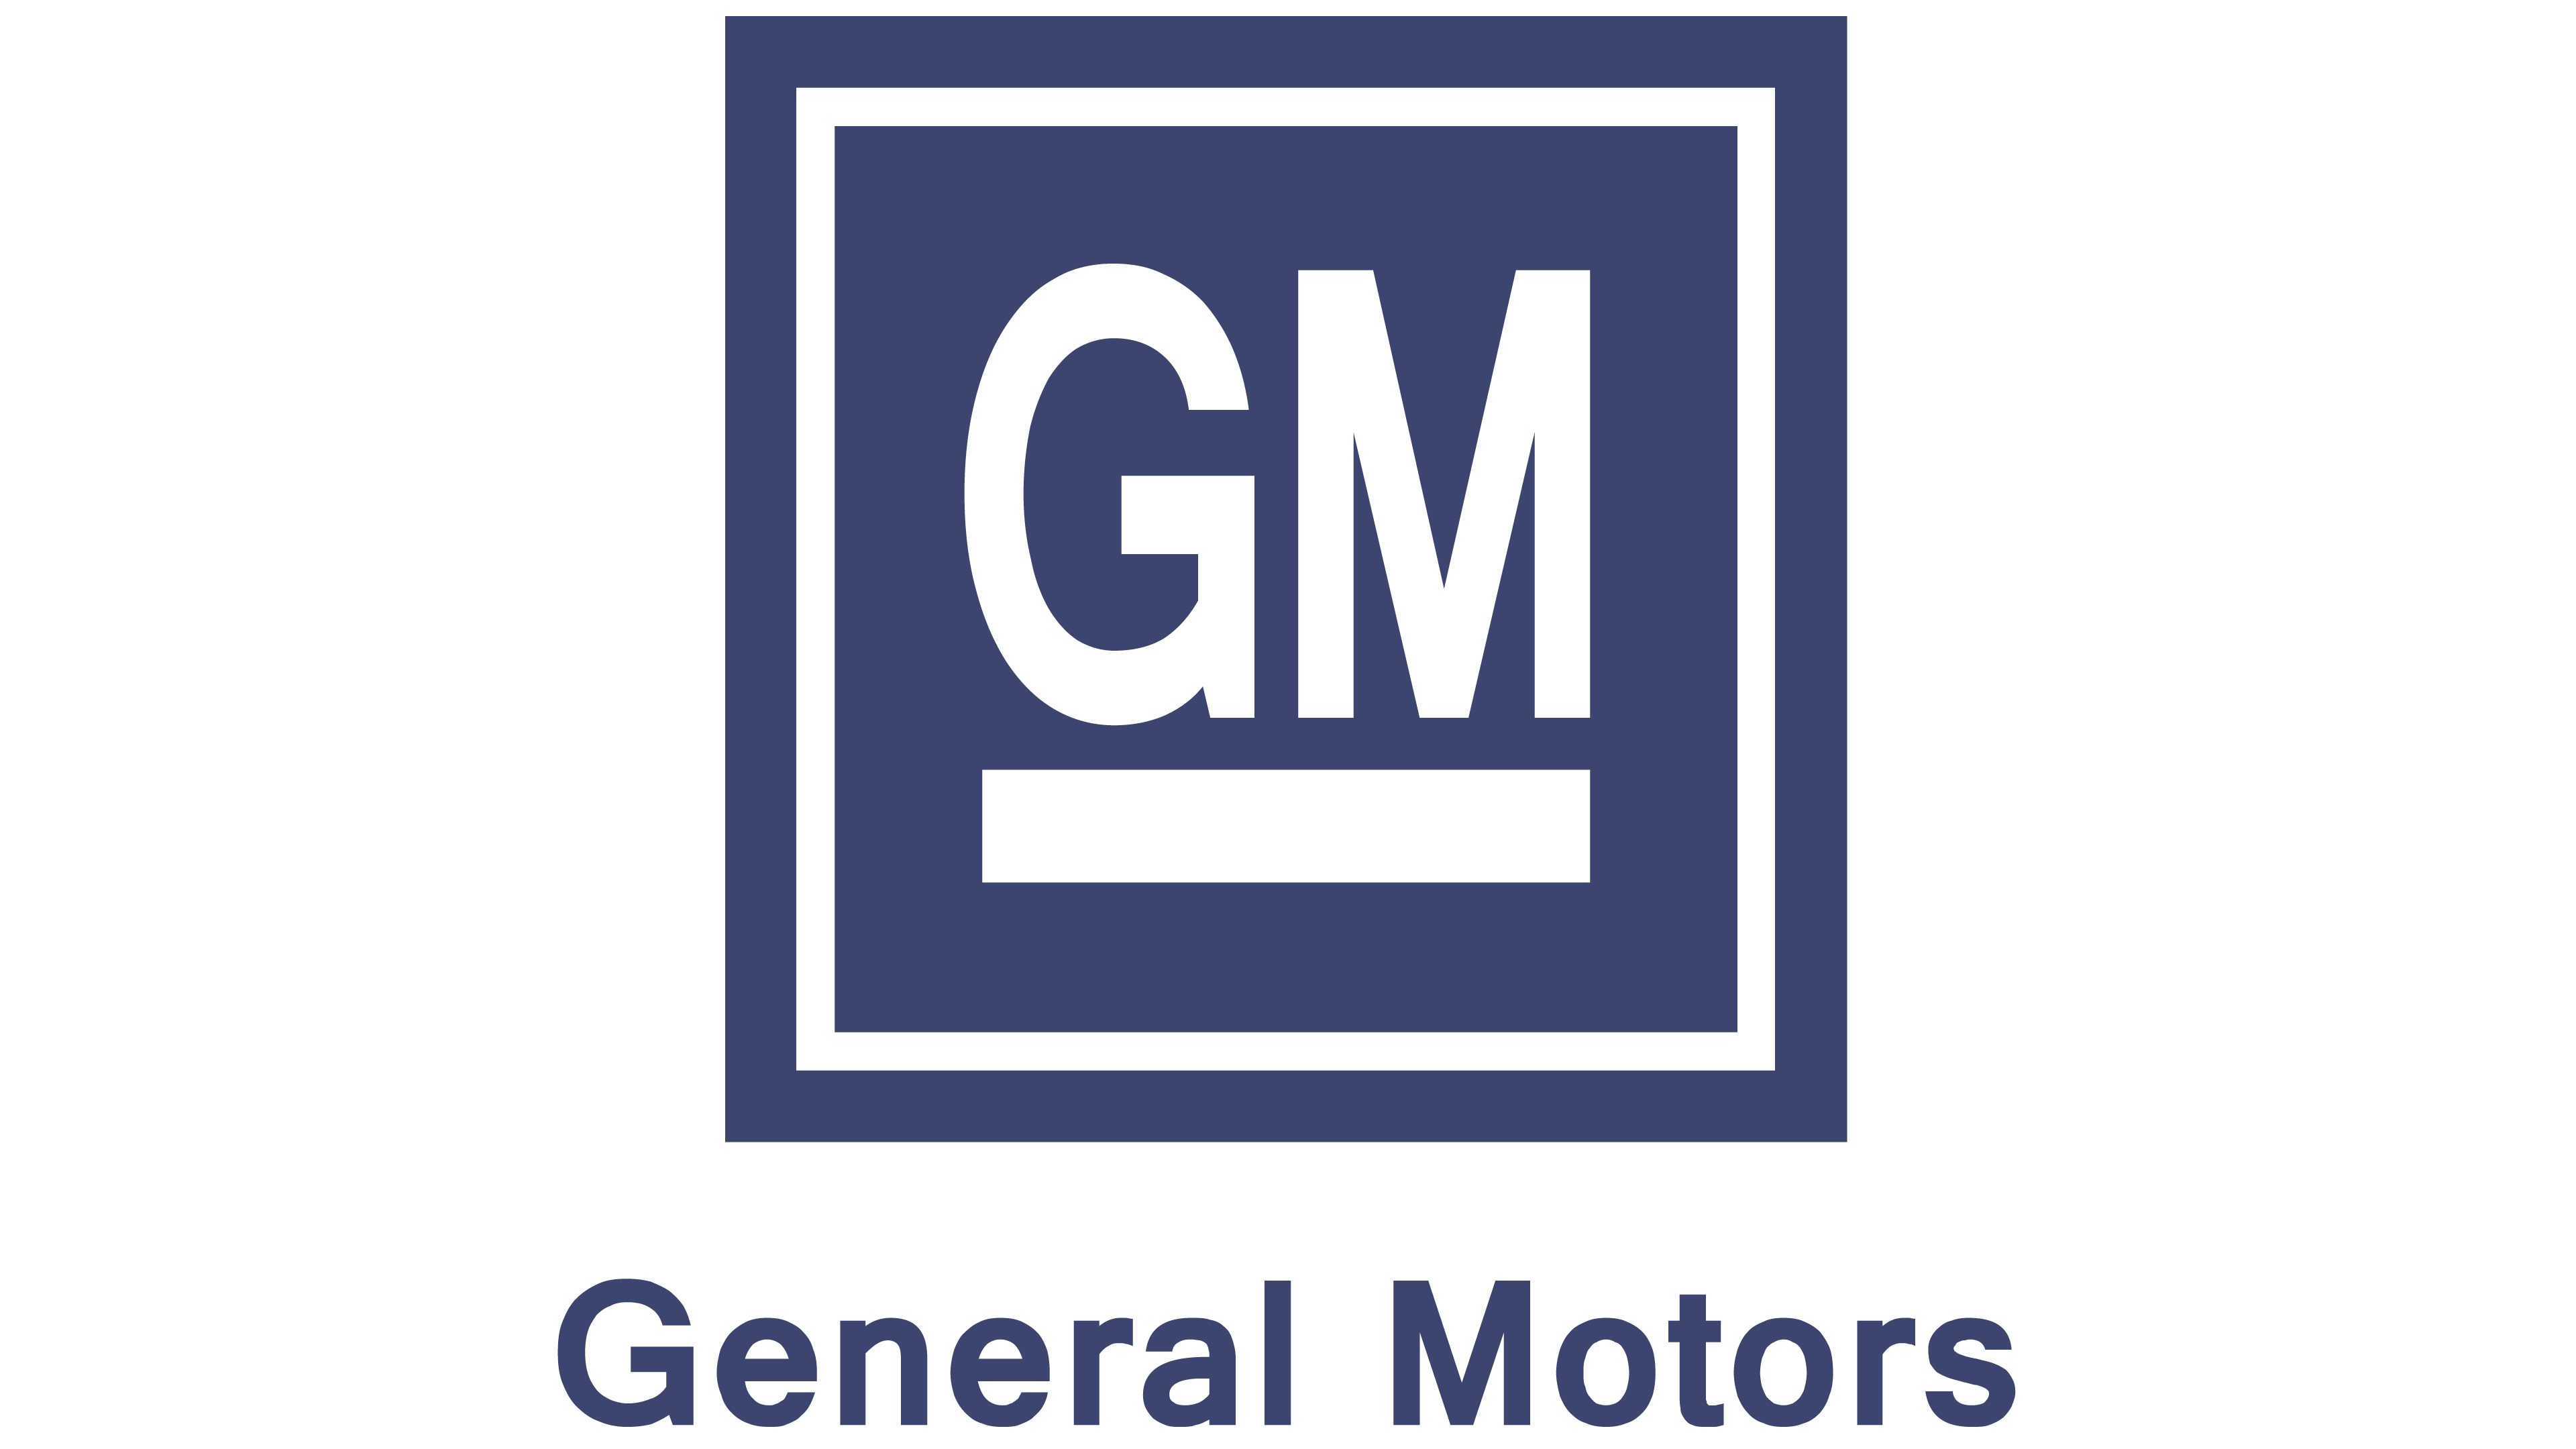 New General Motors Logo - Gm general motors Logos